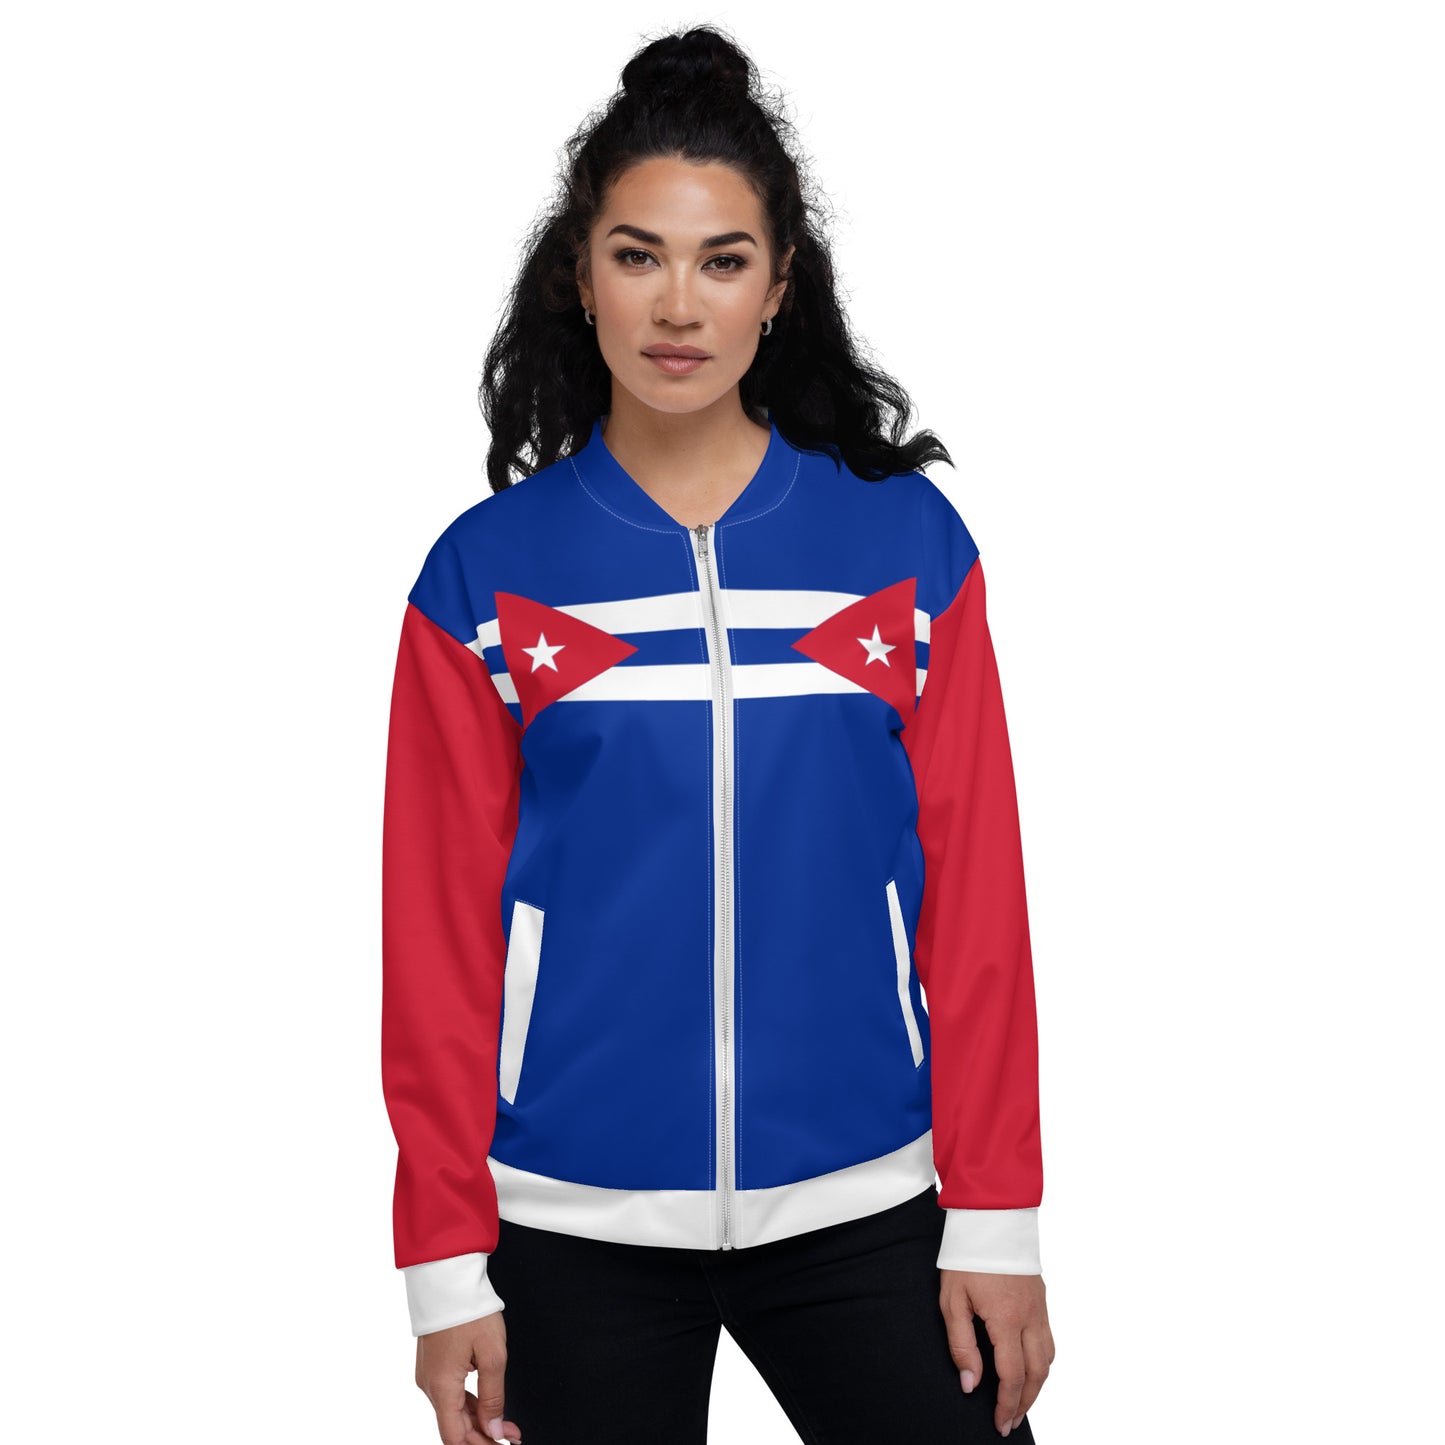 Cuban Flag Jacket / Blue Bomber Jacket / Cuban Style Clothing